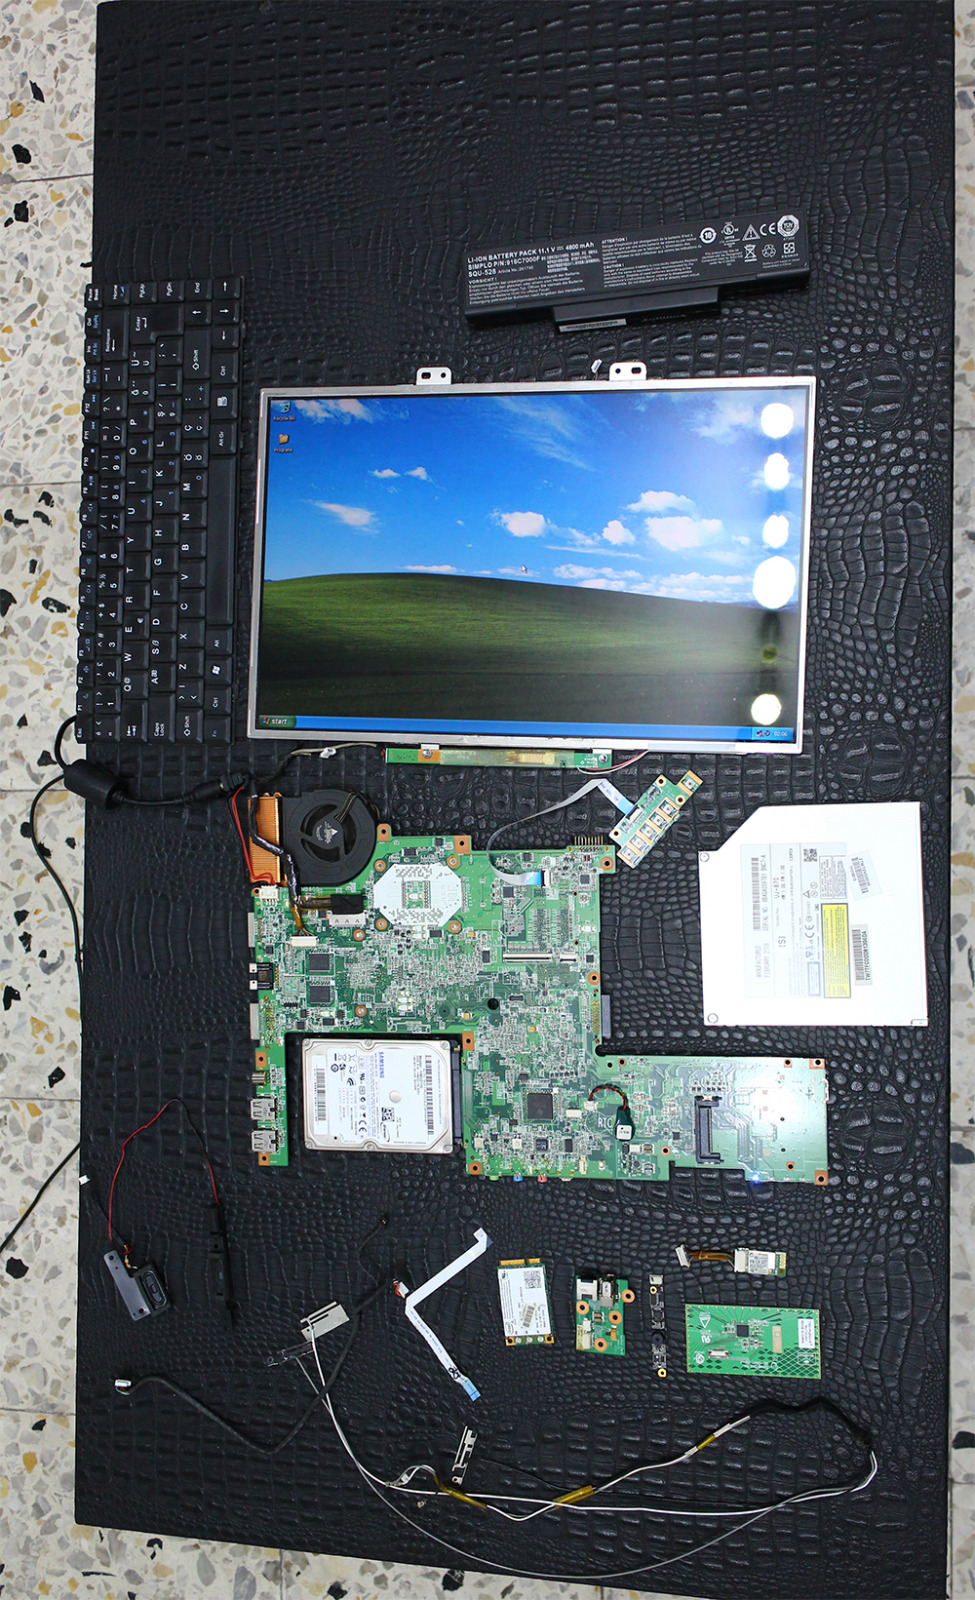  Casper TW7 komple dizüstü bilgisayar parçaları (hepsi çalışıyor) T7700, 2 GB RAM, 320 GB HDD